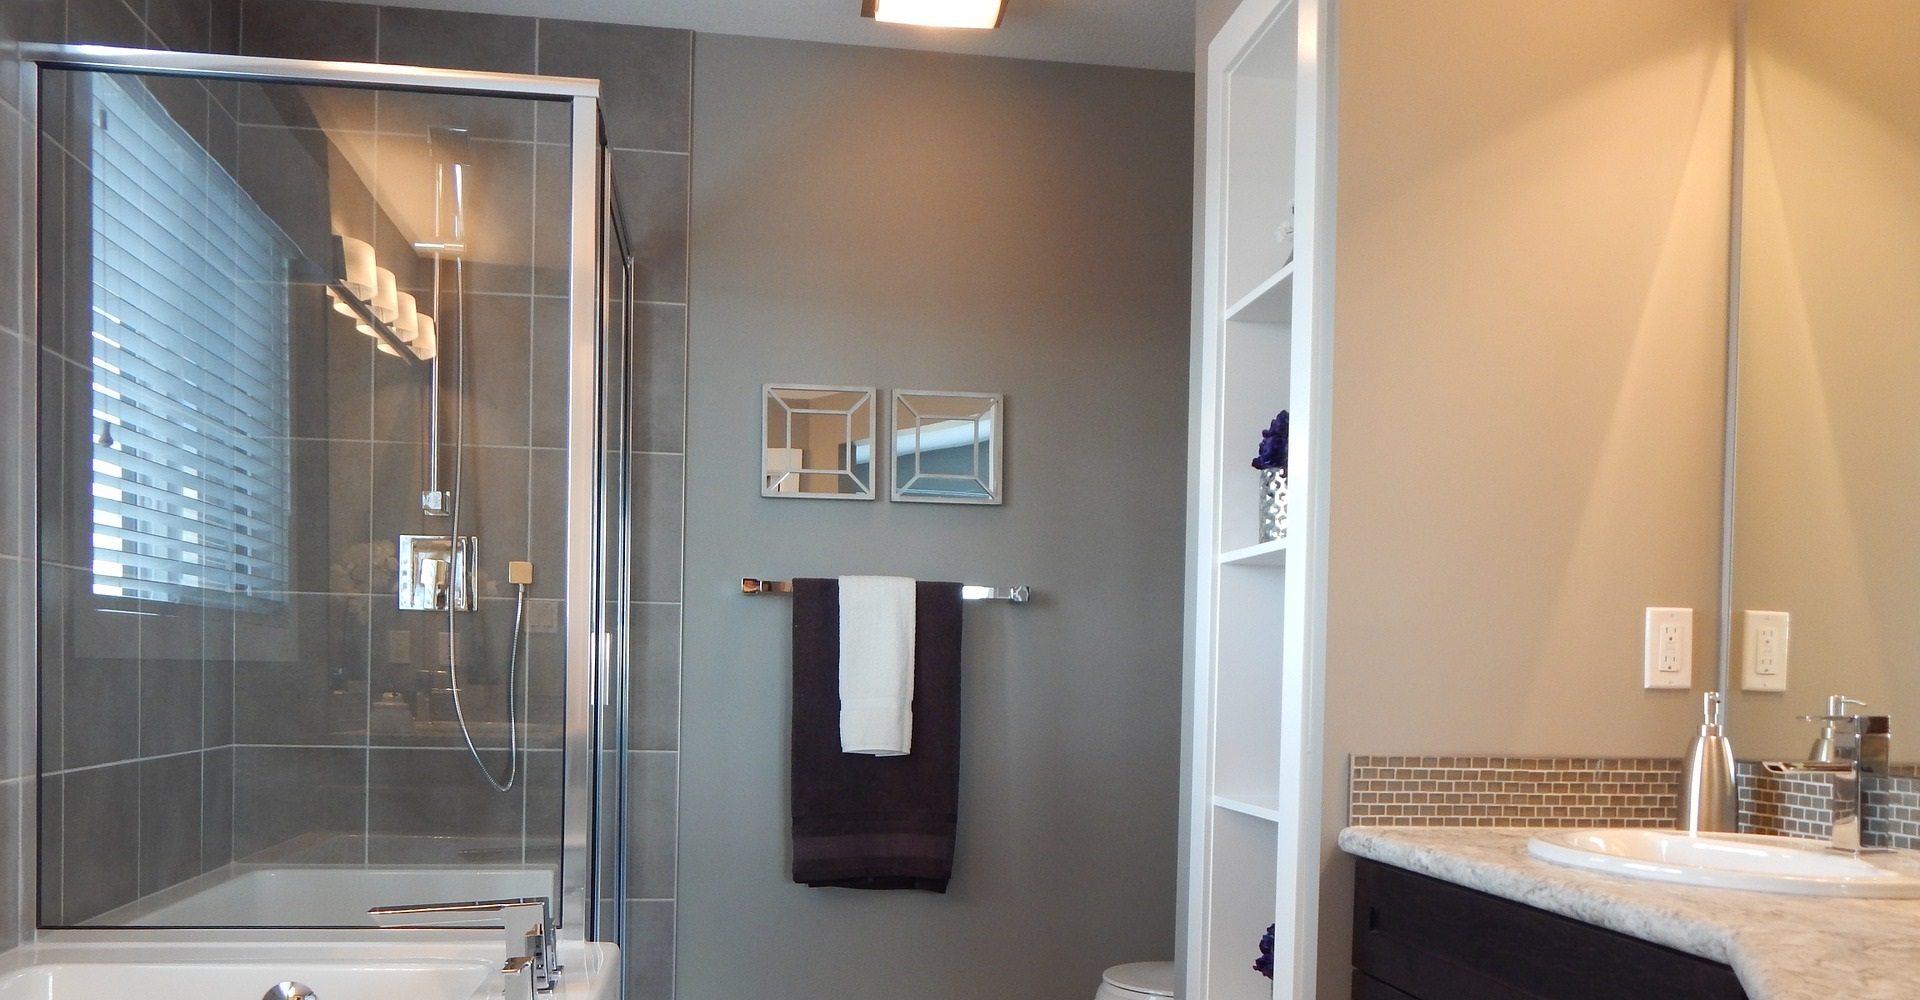 Организация места в ванной комнате маленькой. Our Shower Enclosure. Live shower